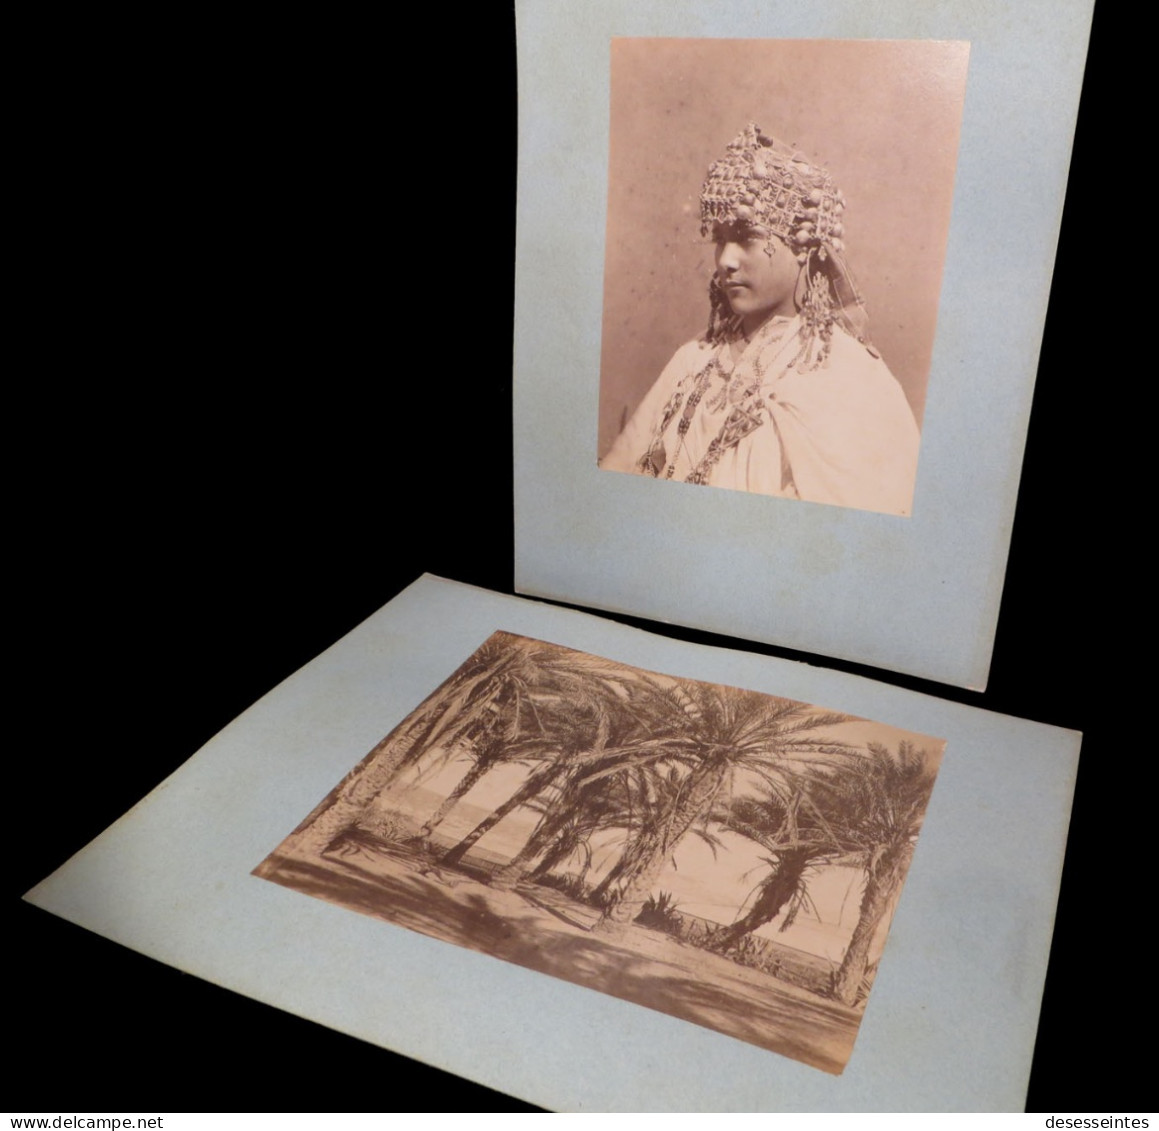 [PHOTO PHOTOGRAPHIE ALGERIE KABYLIE BERBERES] Souvenir d'Algérie / 21 photographies. Circa 1880.